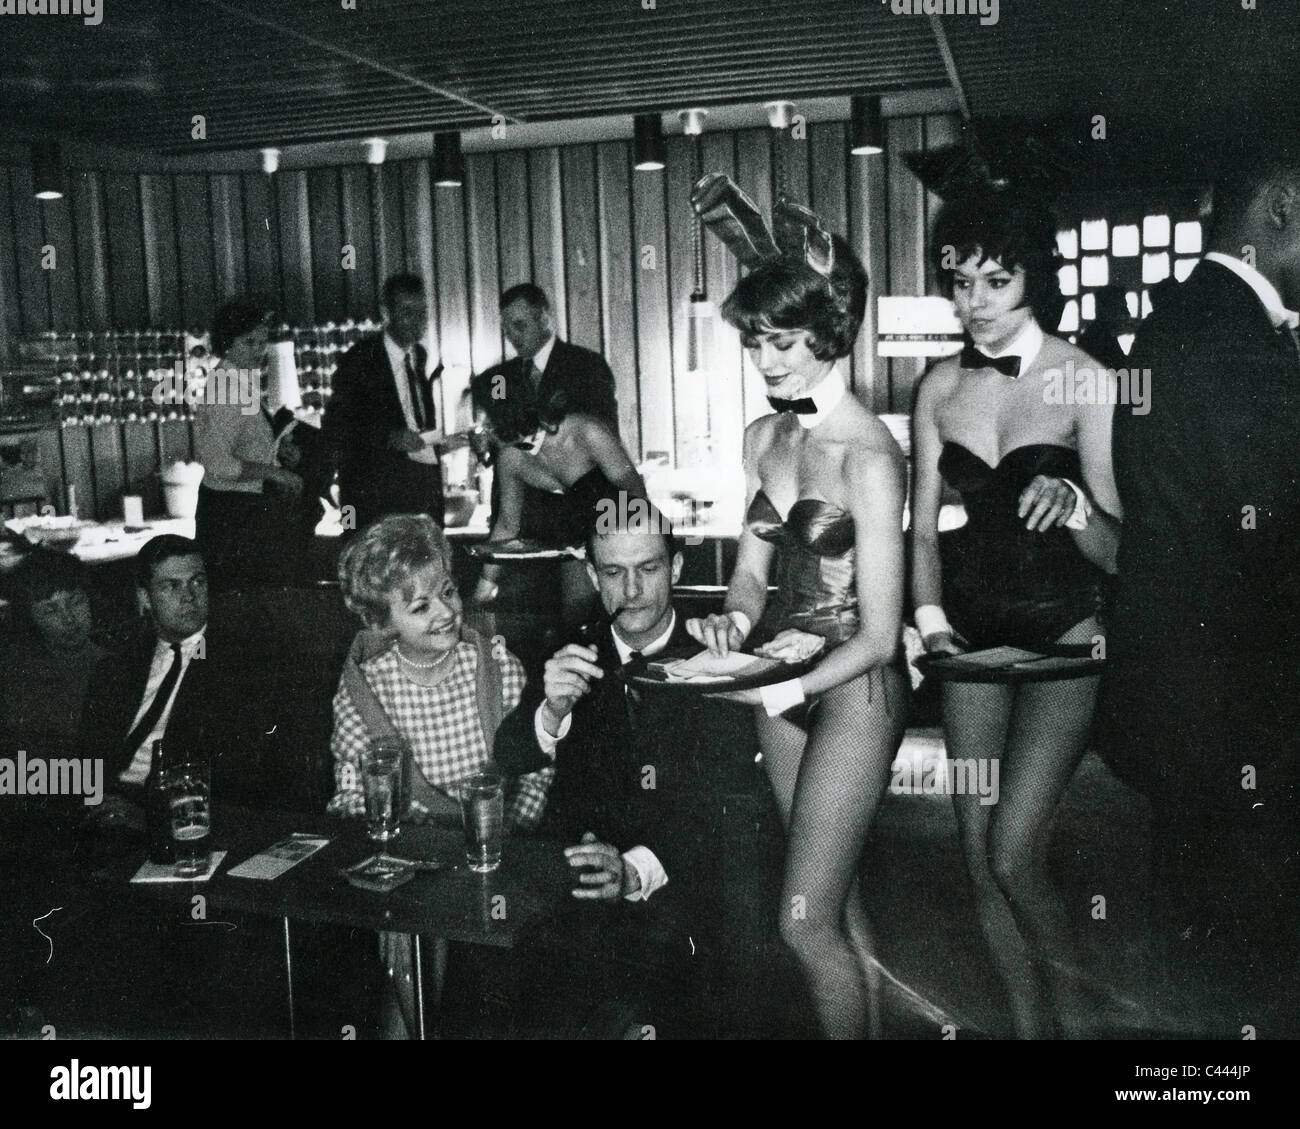 HUGH HEFNER fondateur de la revue Playboy avec lapins dans un de ses clubs Playboy sur 1965 Banque D'Images